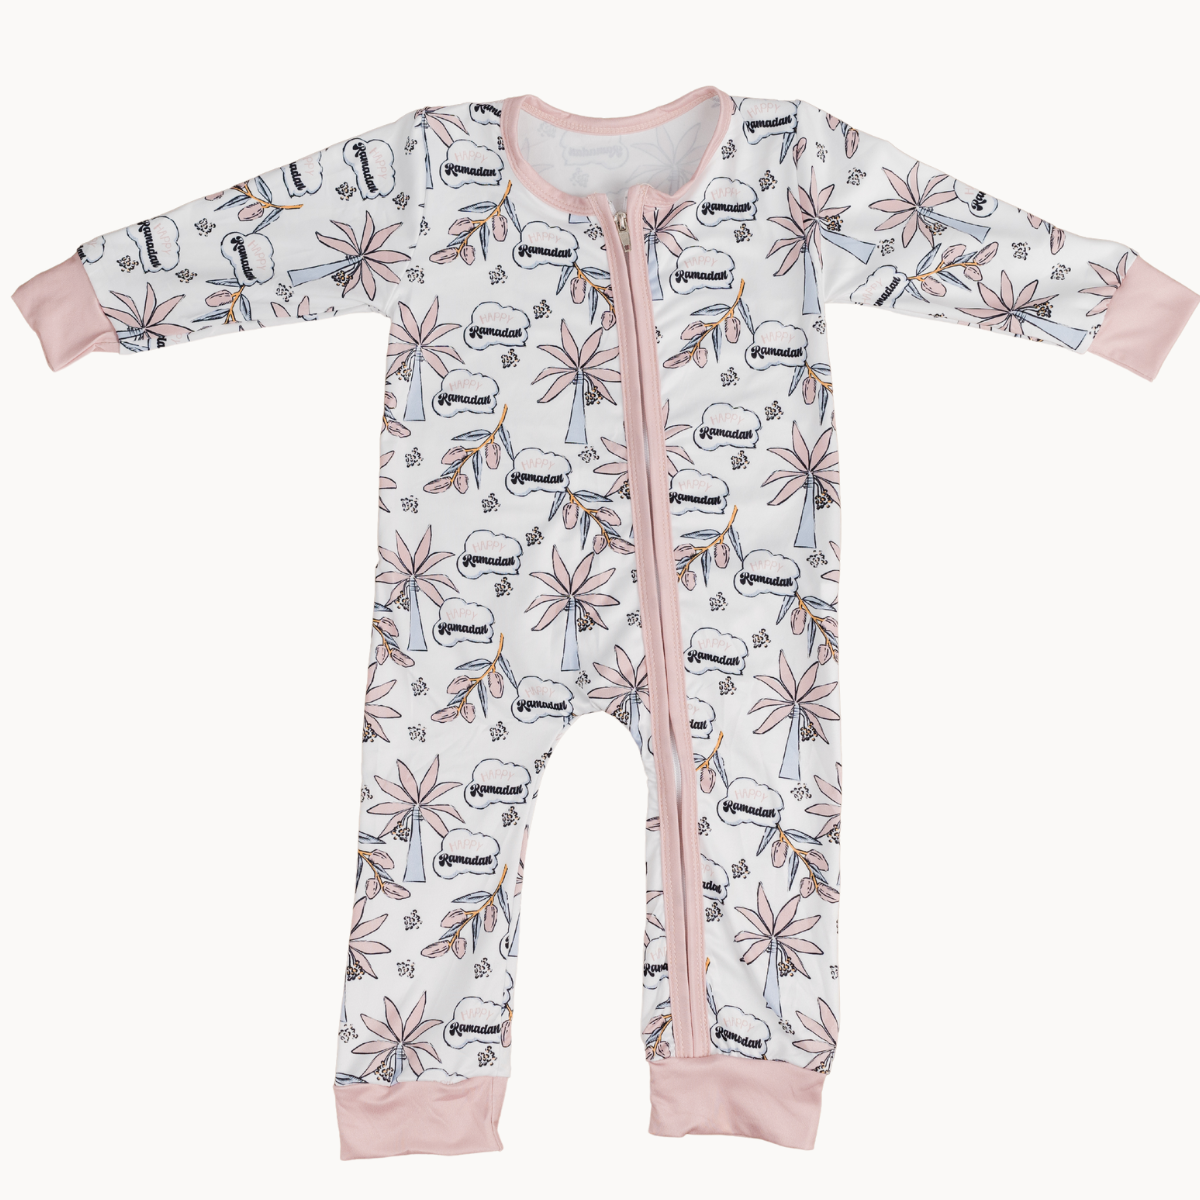 Imperfect Sale - Pink Date Palm Tree Sleepwear